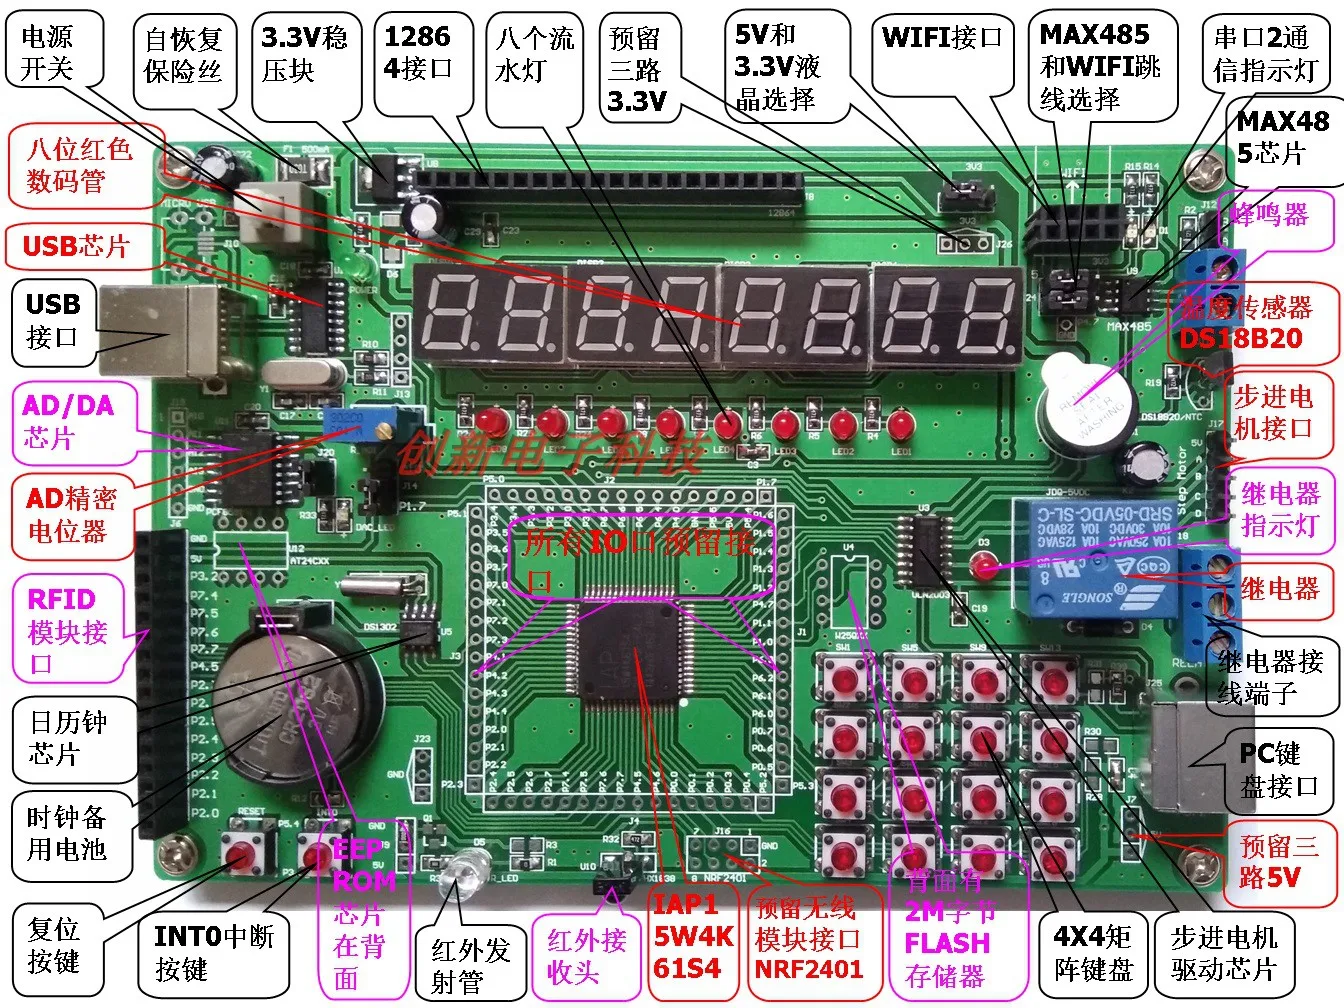 51-microcomputer-a-chip-singolo-iap-stc-scheda-di-sviluppo-serie-15-scheda-di-esperimento-iap15w4k61s4